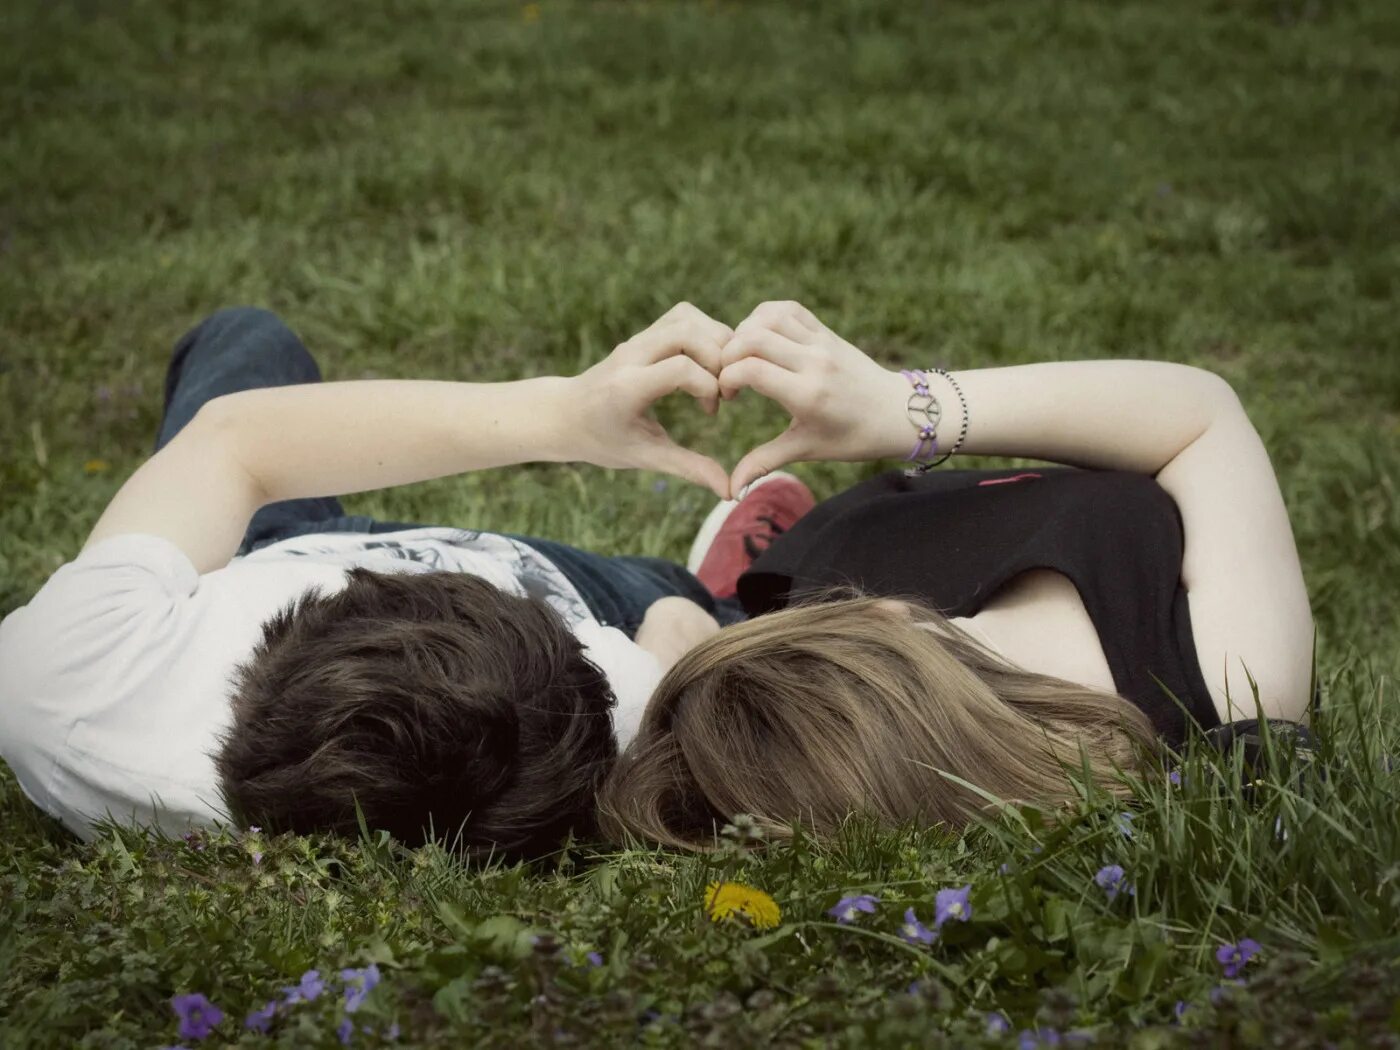 Пара влюбленных. Влюбленные лежат на траве. Подростковая влюбленность. Картинки влюбленных. Аккуратная любовь